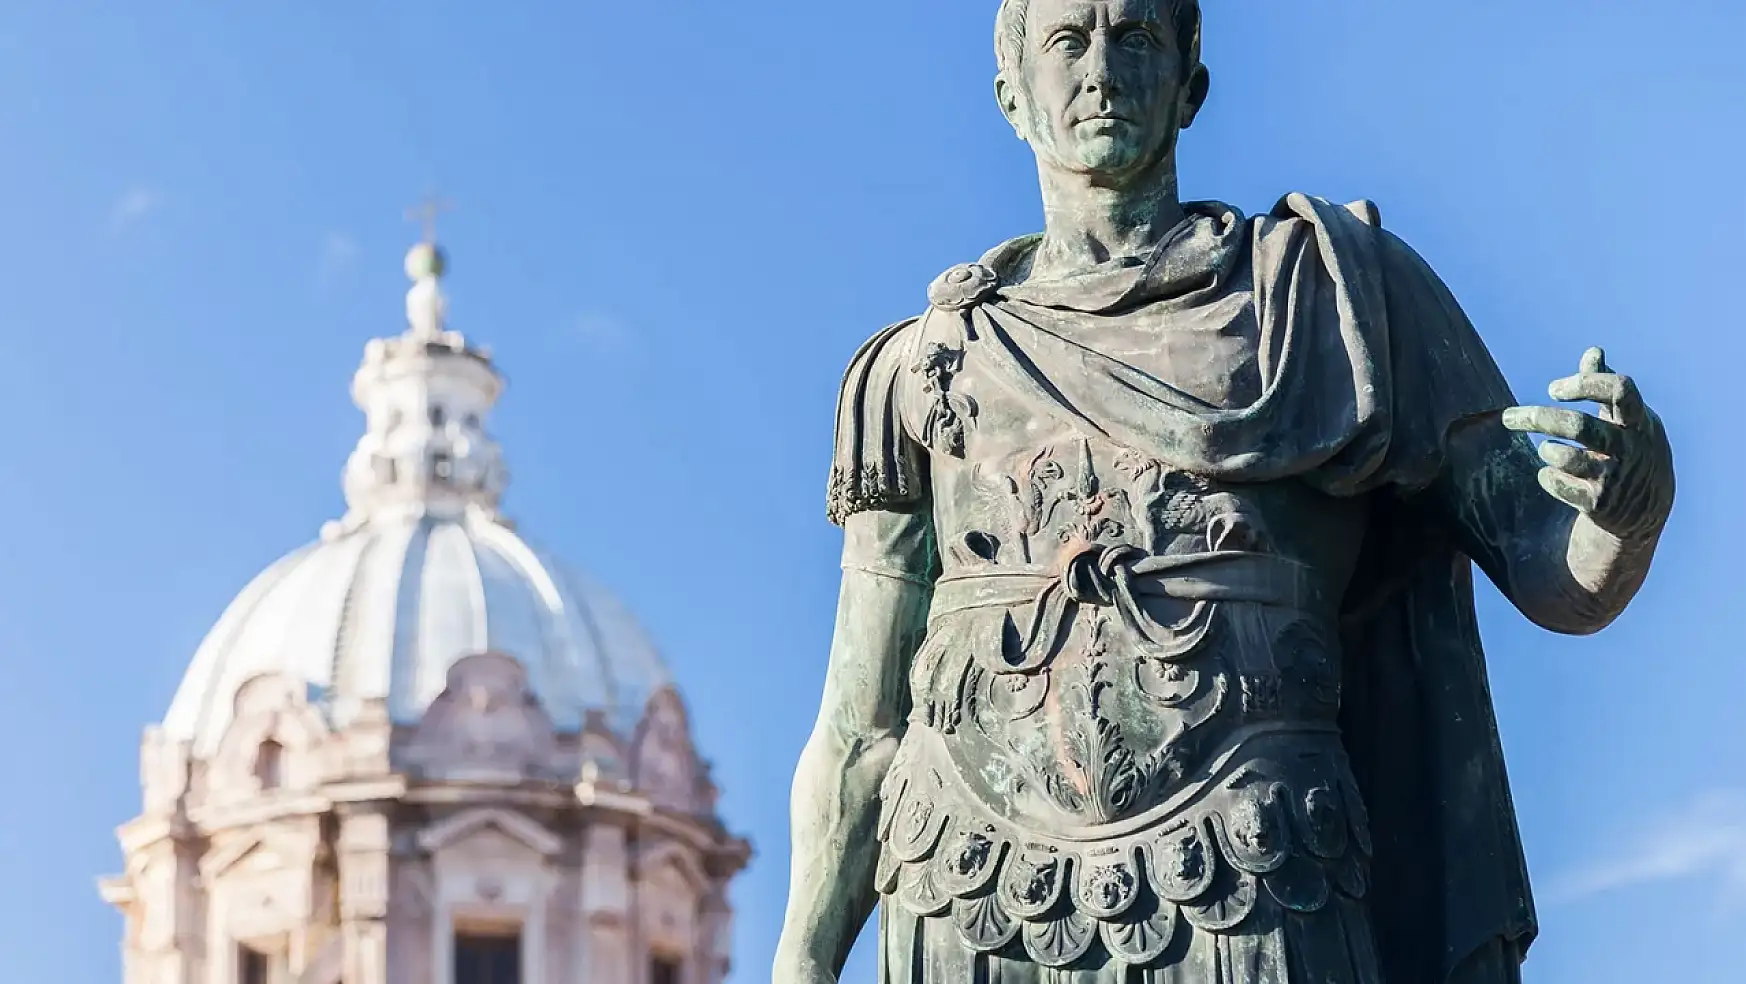 Julius Caesar'ın mirası: Antik Roma'nın efsanevi lideri